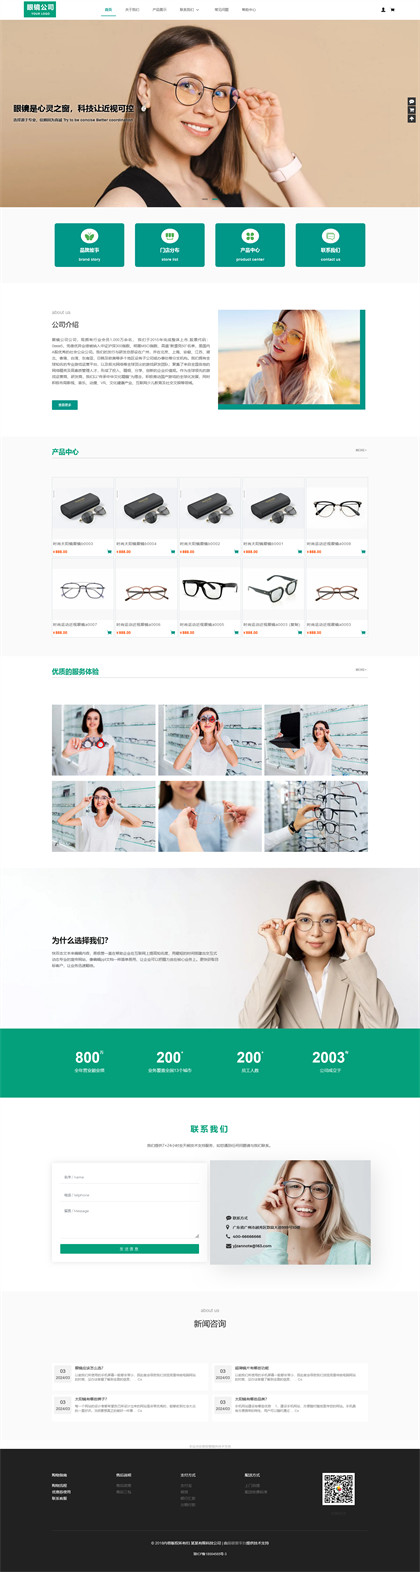 眼镜公司-太阳镜公司-近视眼镜商城网站模板网站模板图片